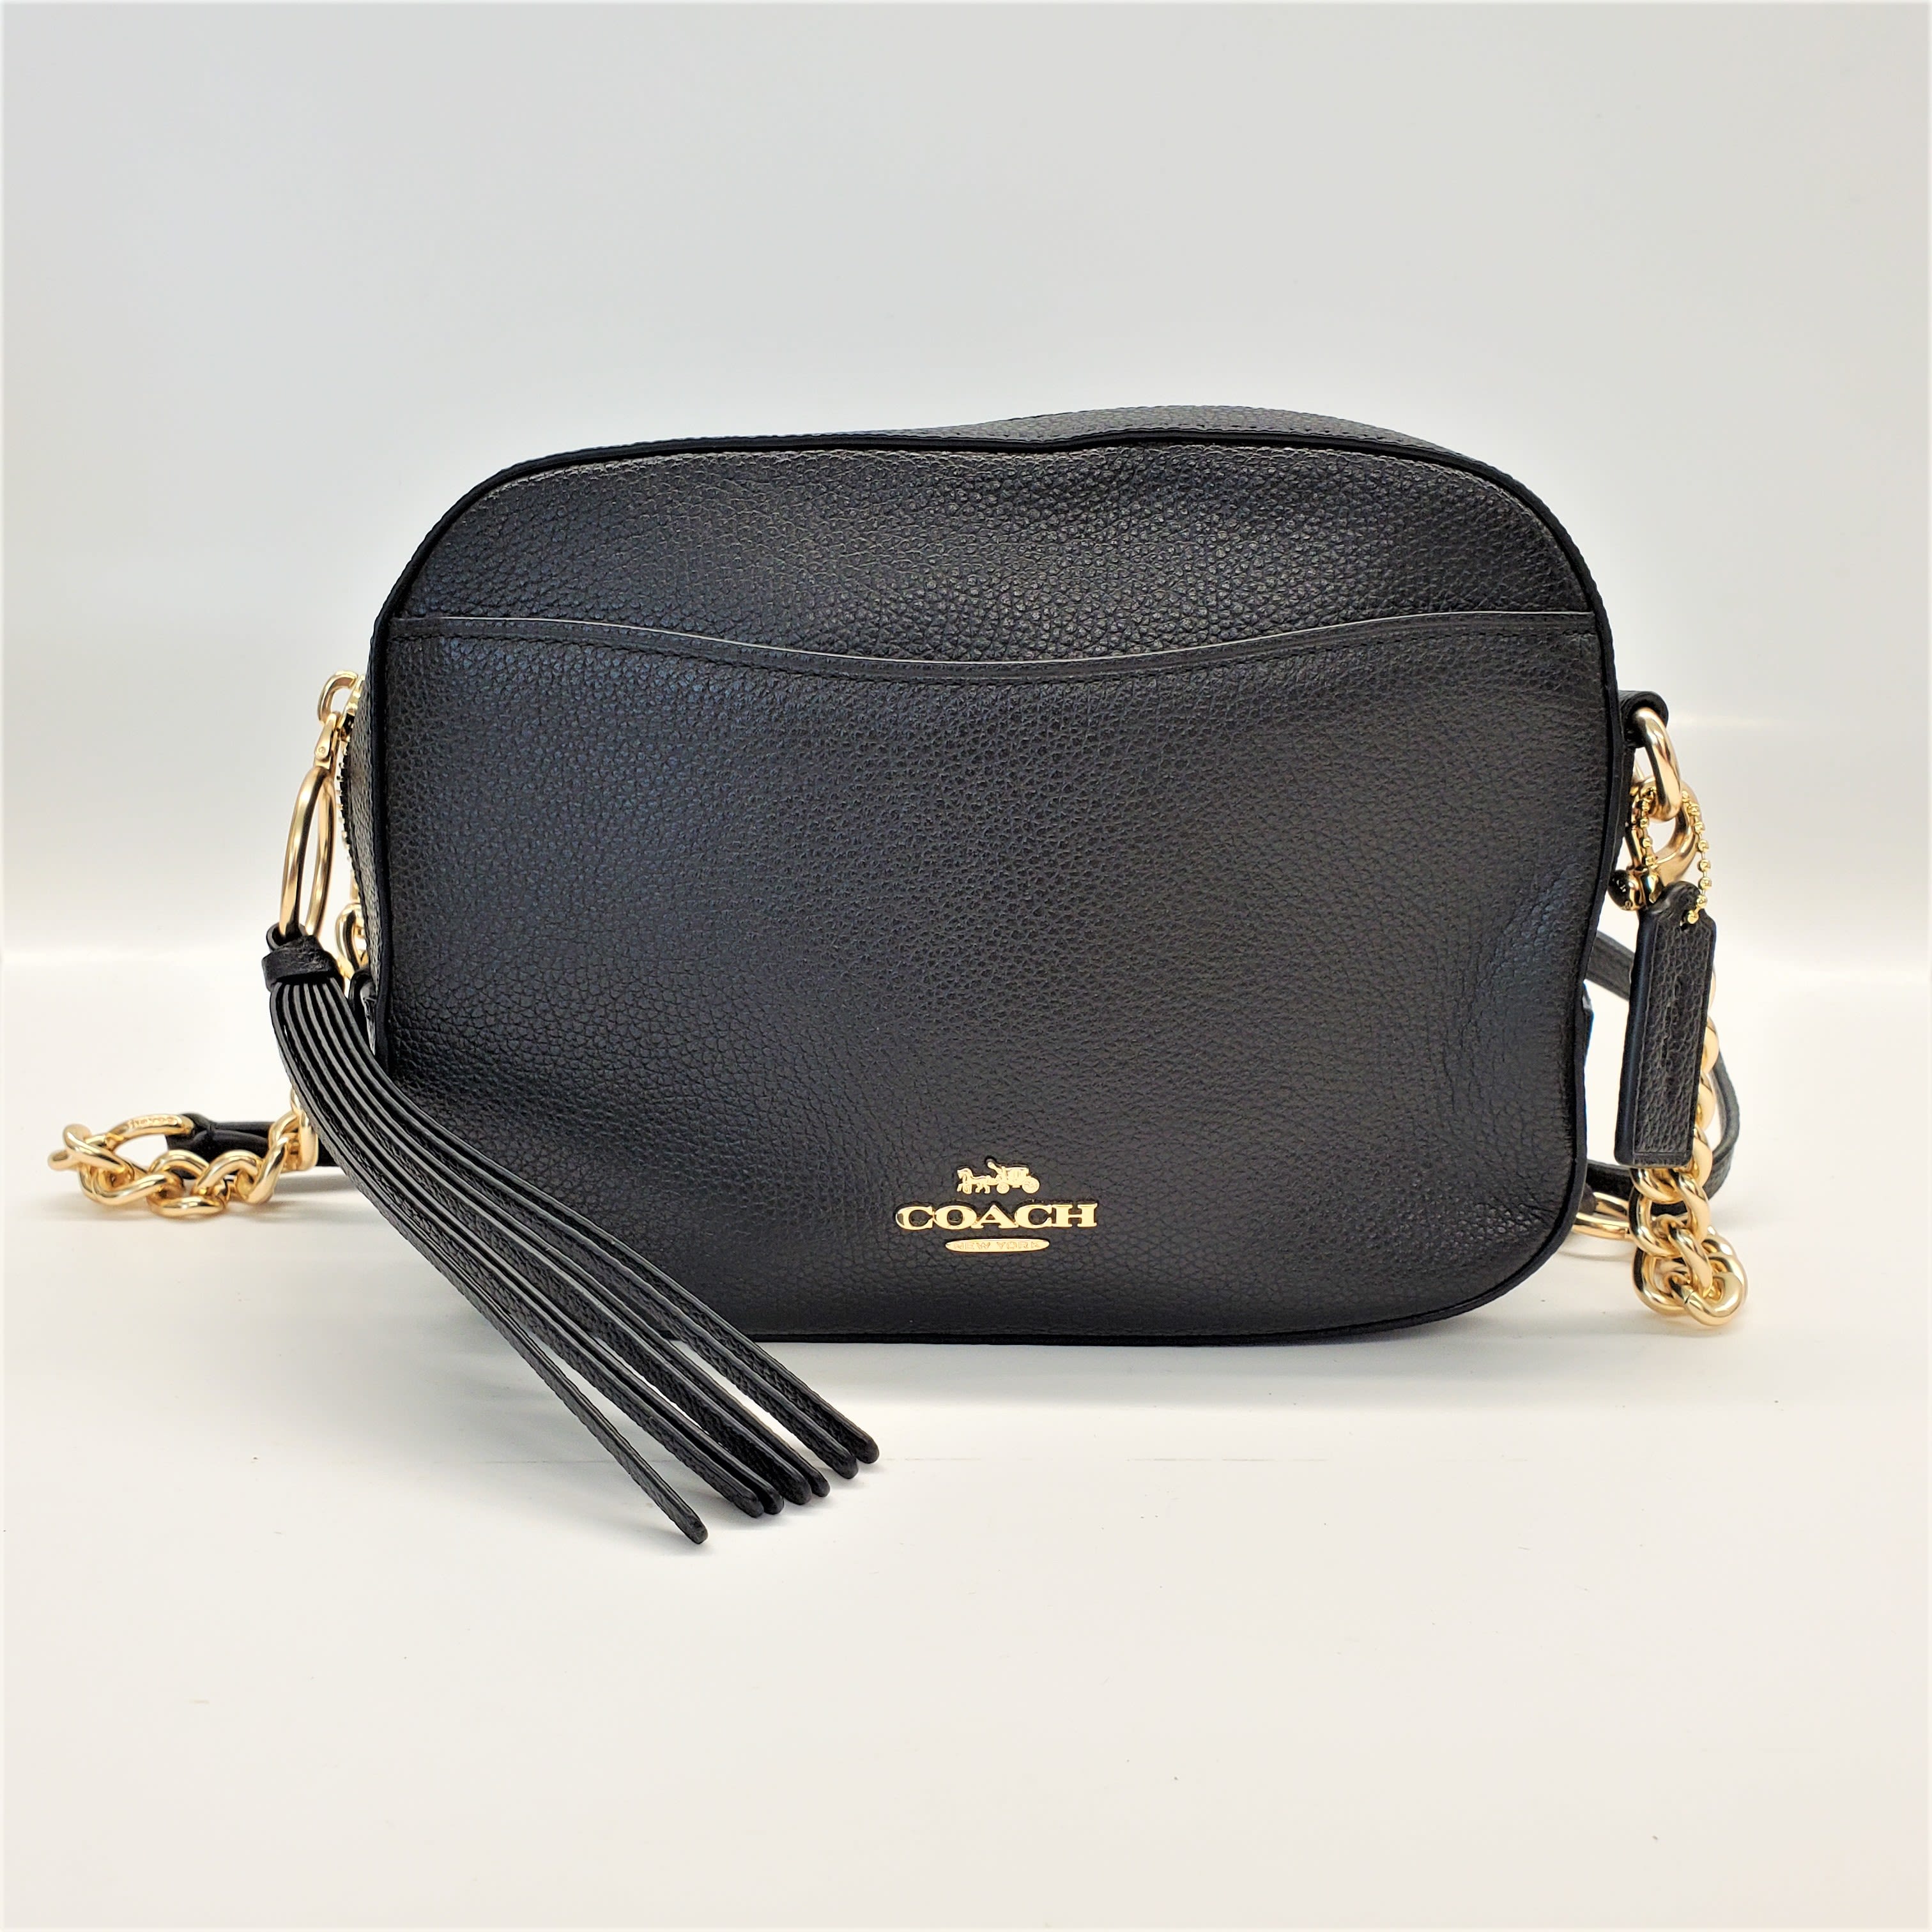 Coach Ladies Leather Camera Bag 29411 LIBLK 191202713086 - Handbags -  Jomashop